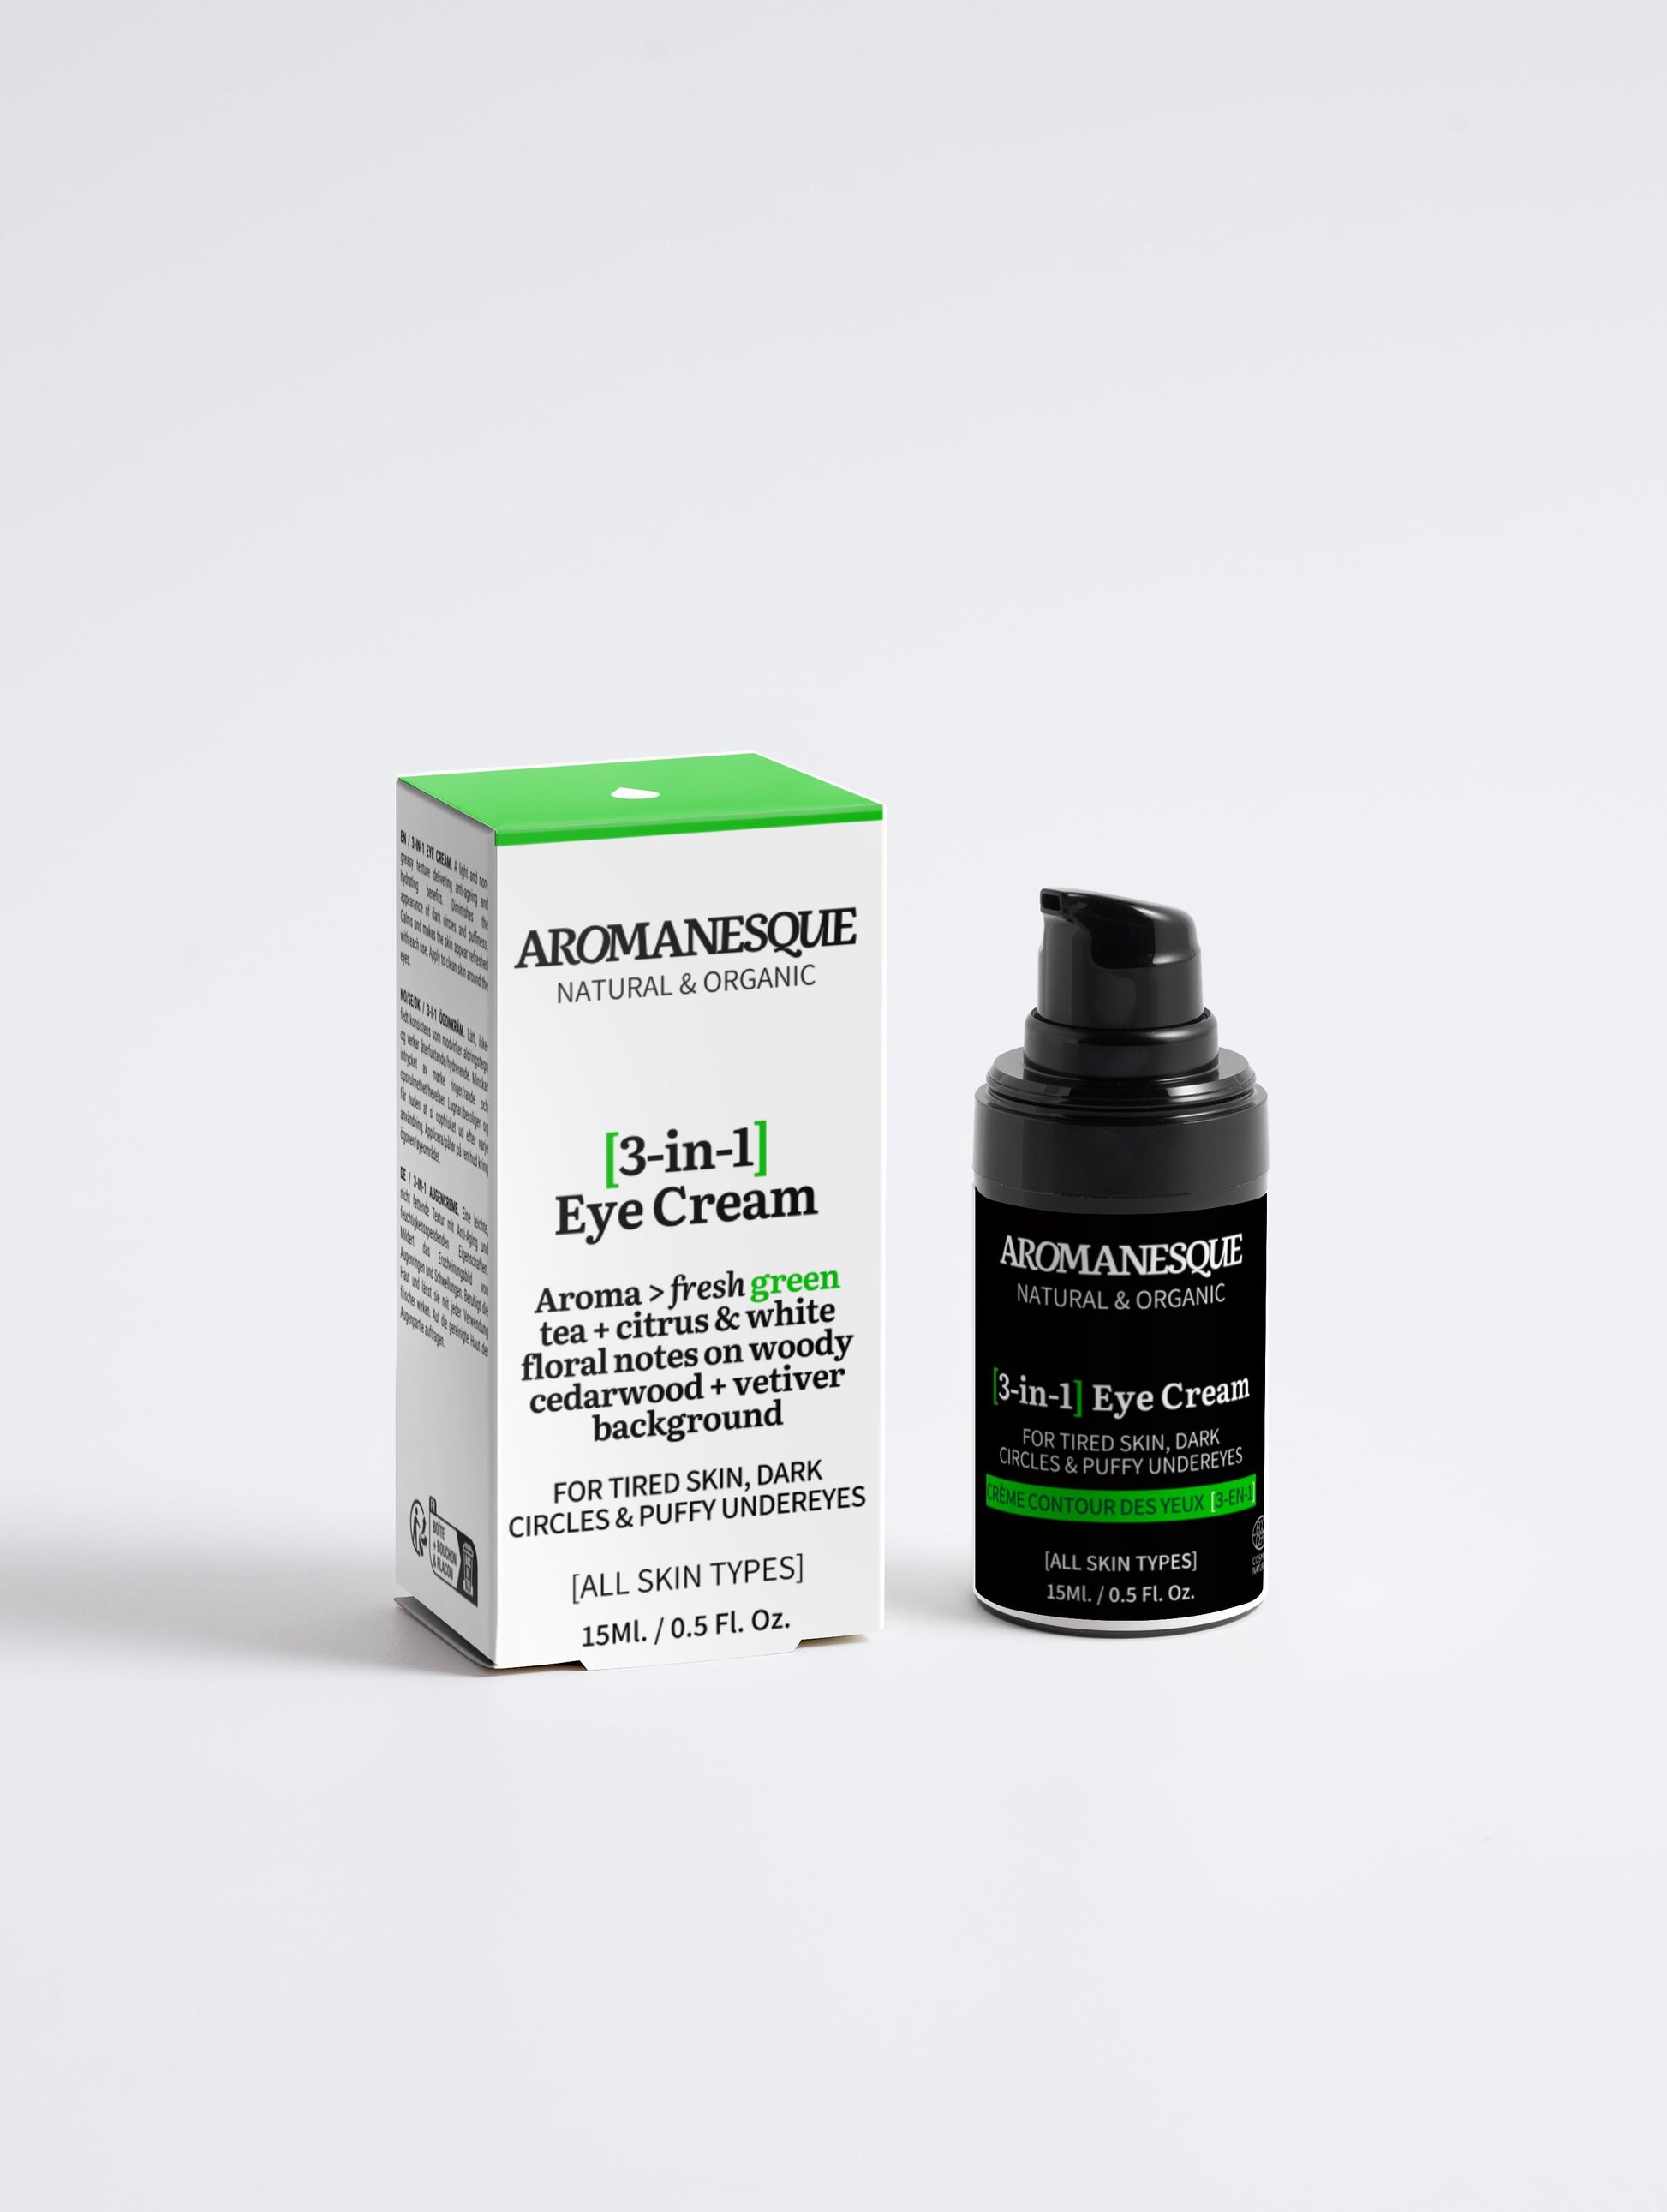 Aromanesque [3-in-1] Eye Cream for Men - 15Ml